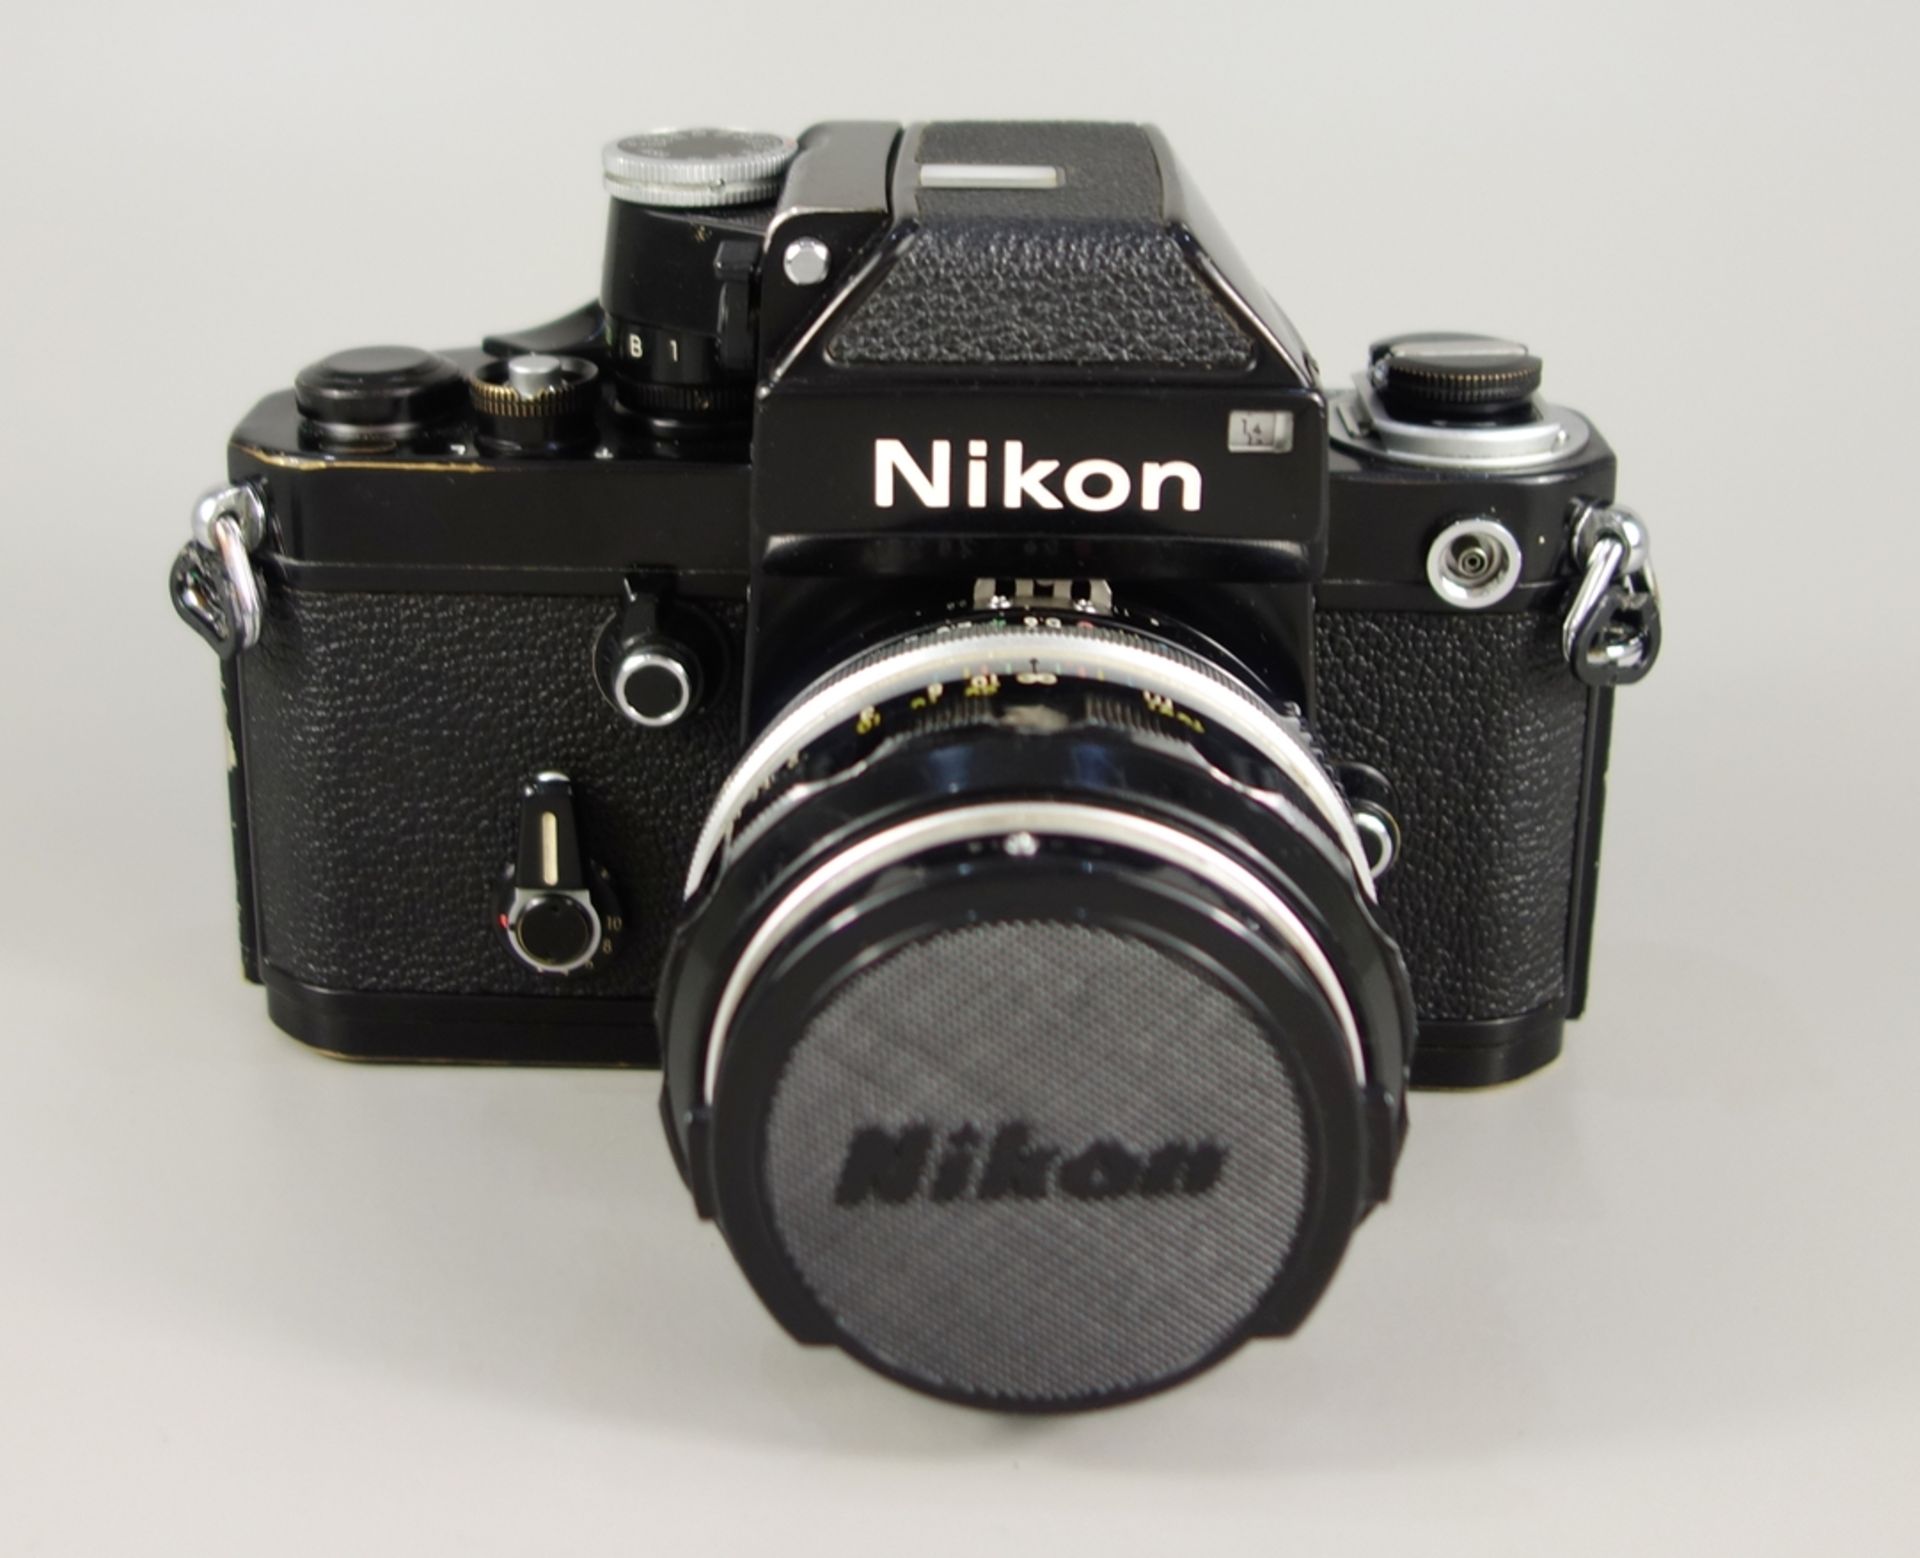 Nikon F2 Photomic, Spiegelreflexkamera, schwarz, 1970er Jahre, Serien-Nr. 7240495, mit Objektiv - Bild 2 aus 5